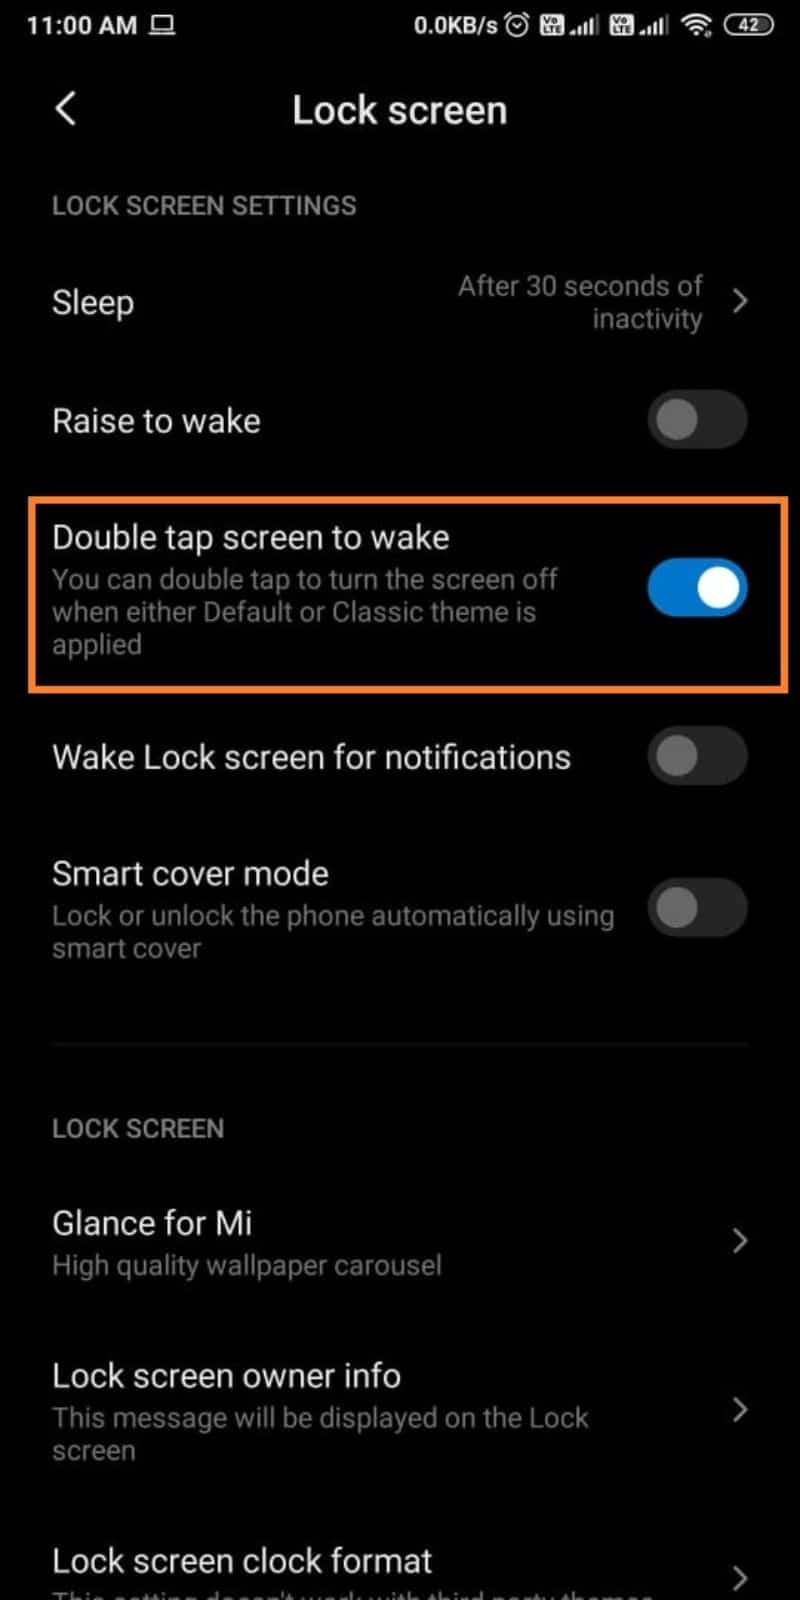 Alternar Toque dos veces la pantalla para despertar | Cómo encender su teléfono sin botón de encendido